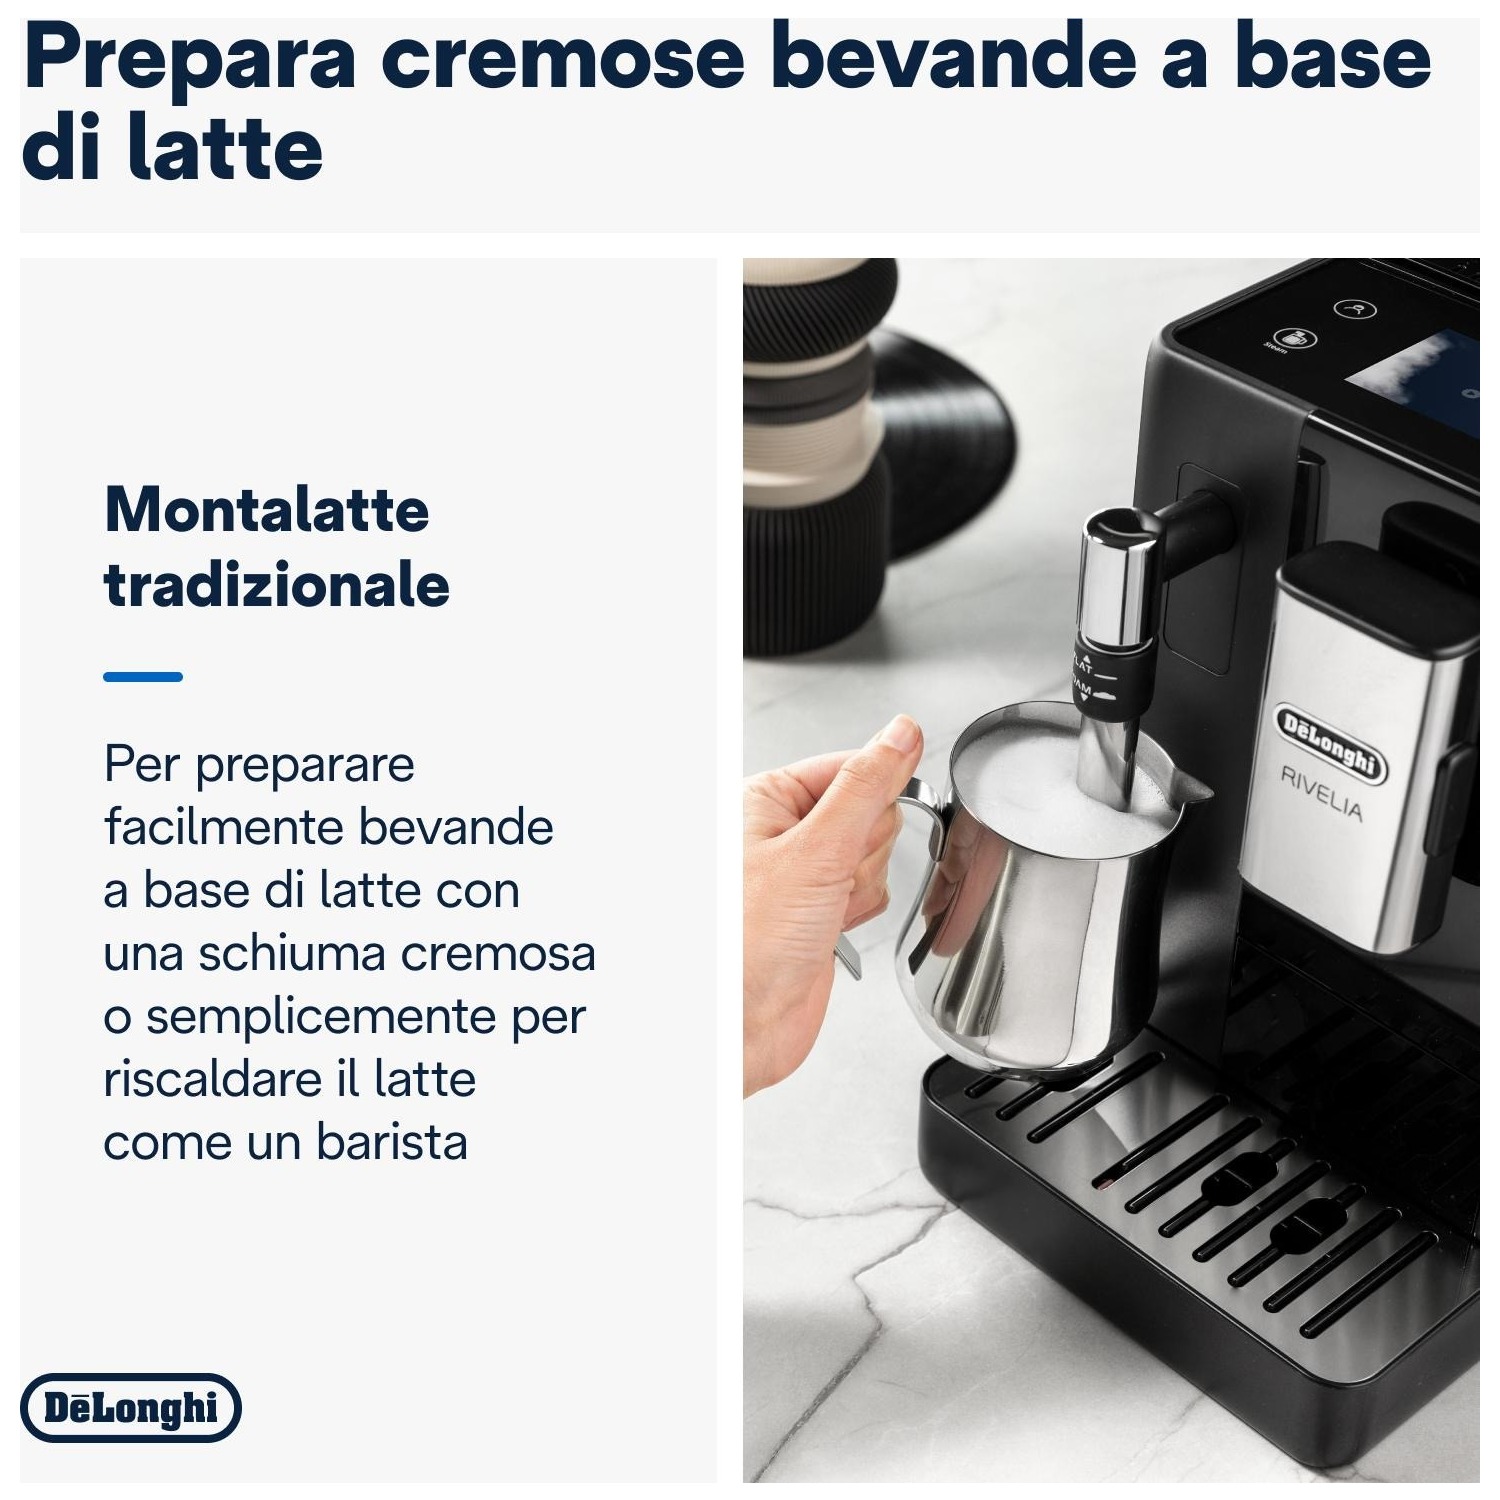 Macchina caffe' automatica De'Longhi Rivelia EXAM440.35.B black nero -  DIMOStore